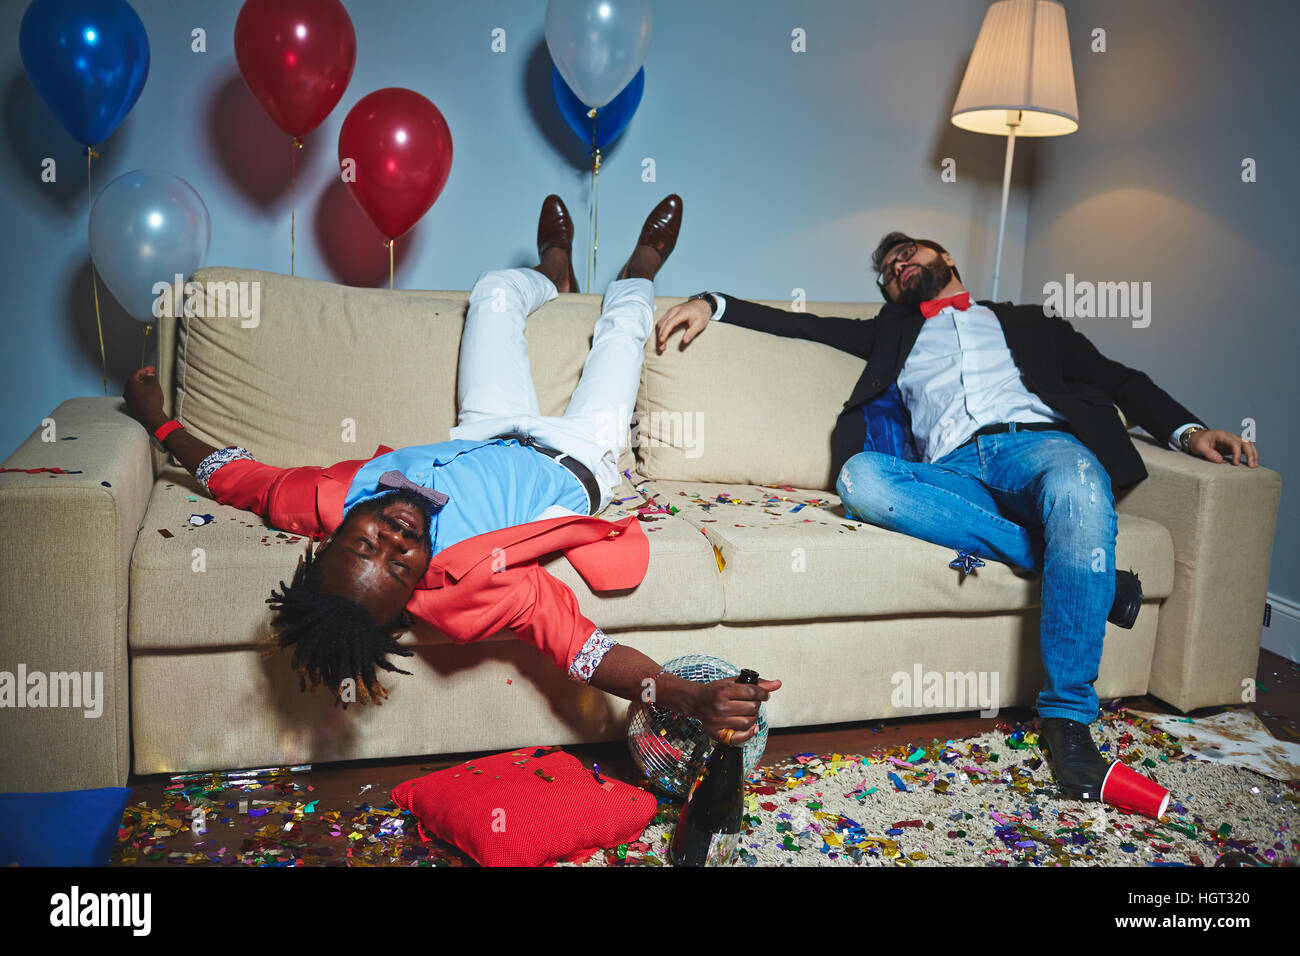 Müde Jungs schlafen auf der Couch nach ermüdenden party Stockfotografie -  Alamy